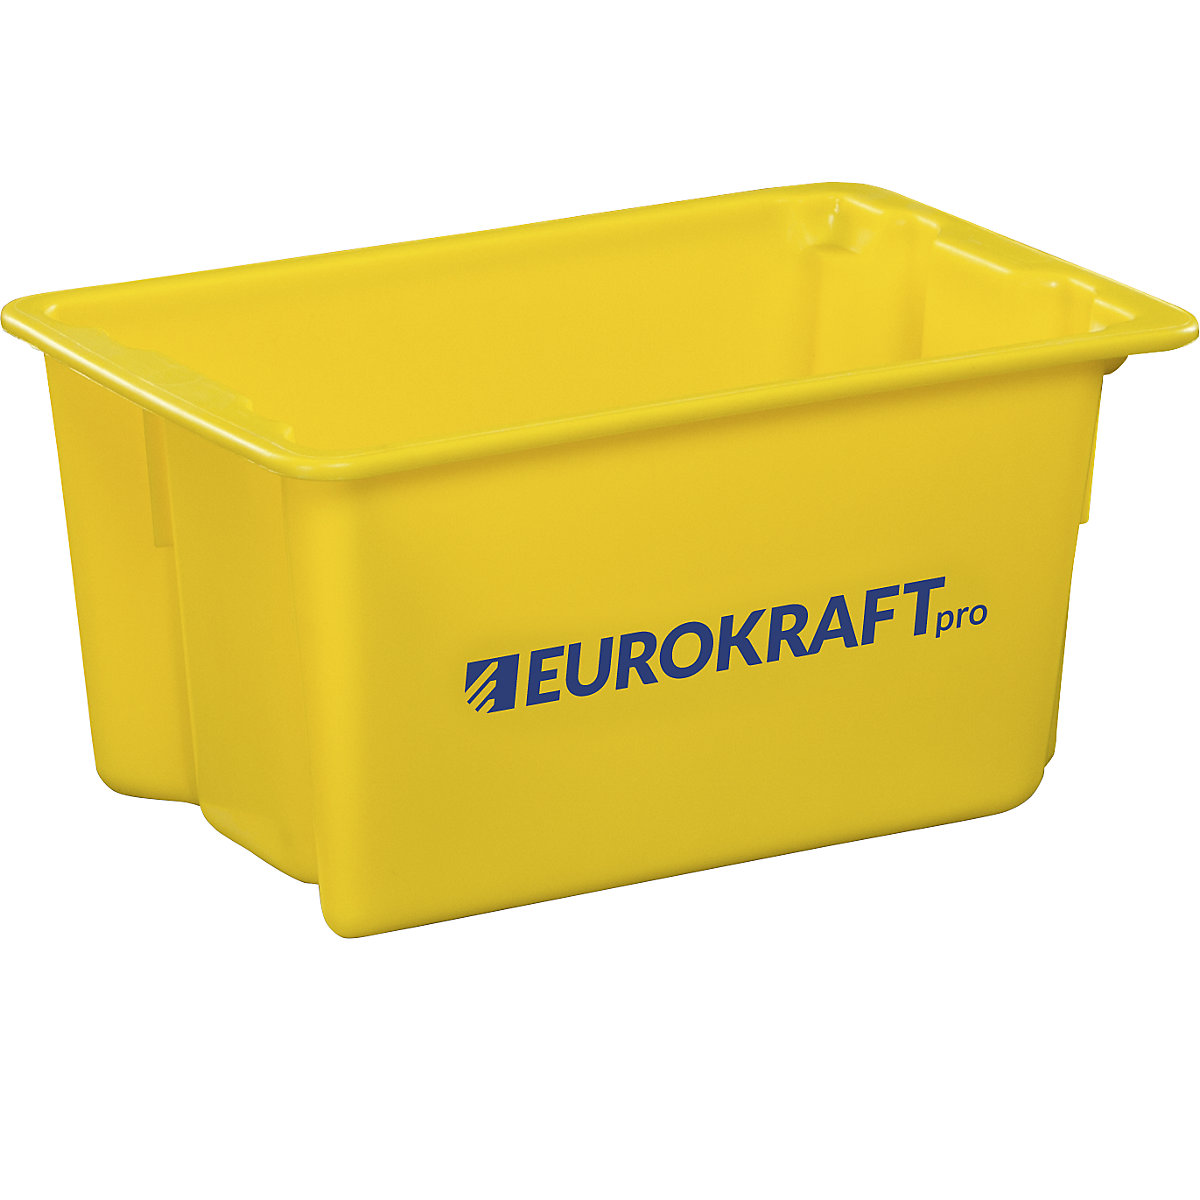 Drehstapelbehälter aus lebensmittelechtem Polypropylen eurokraft pro, Inhalt 50 Liter, VE 3 Stk, Wände und Boden geschlossen, gelb